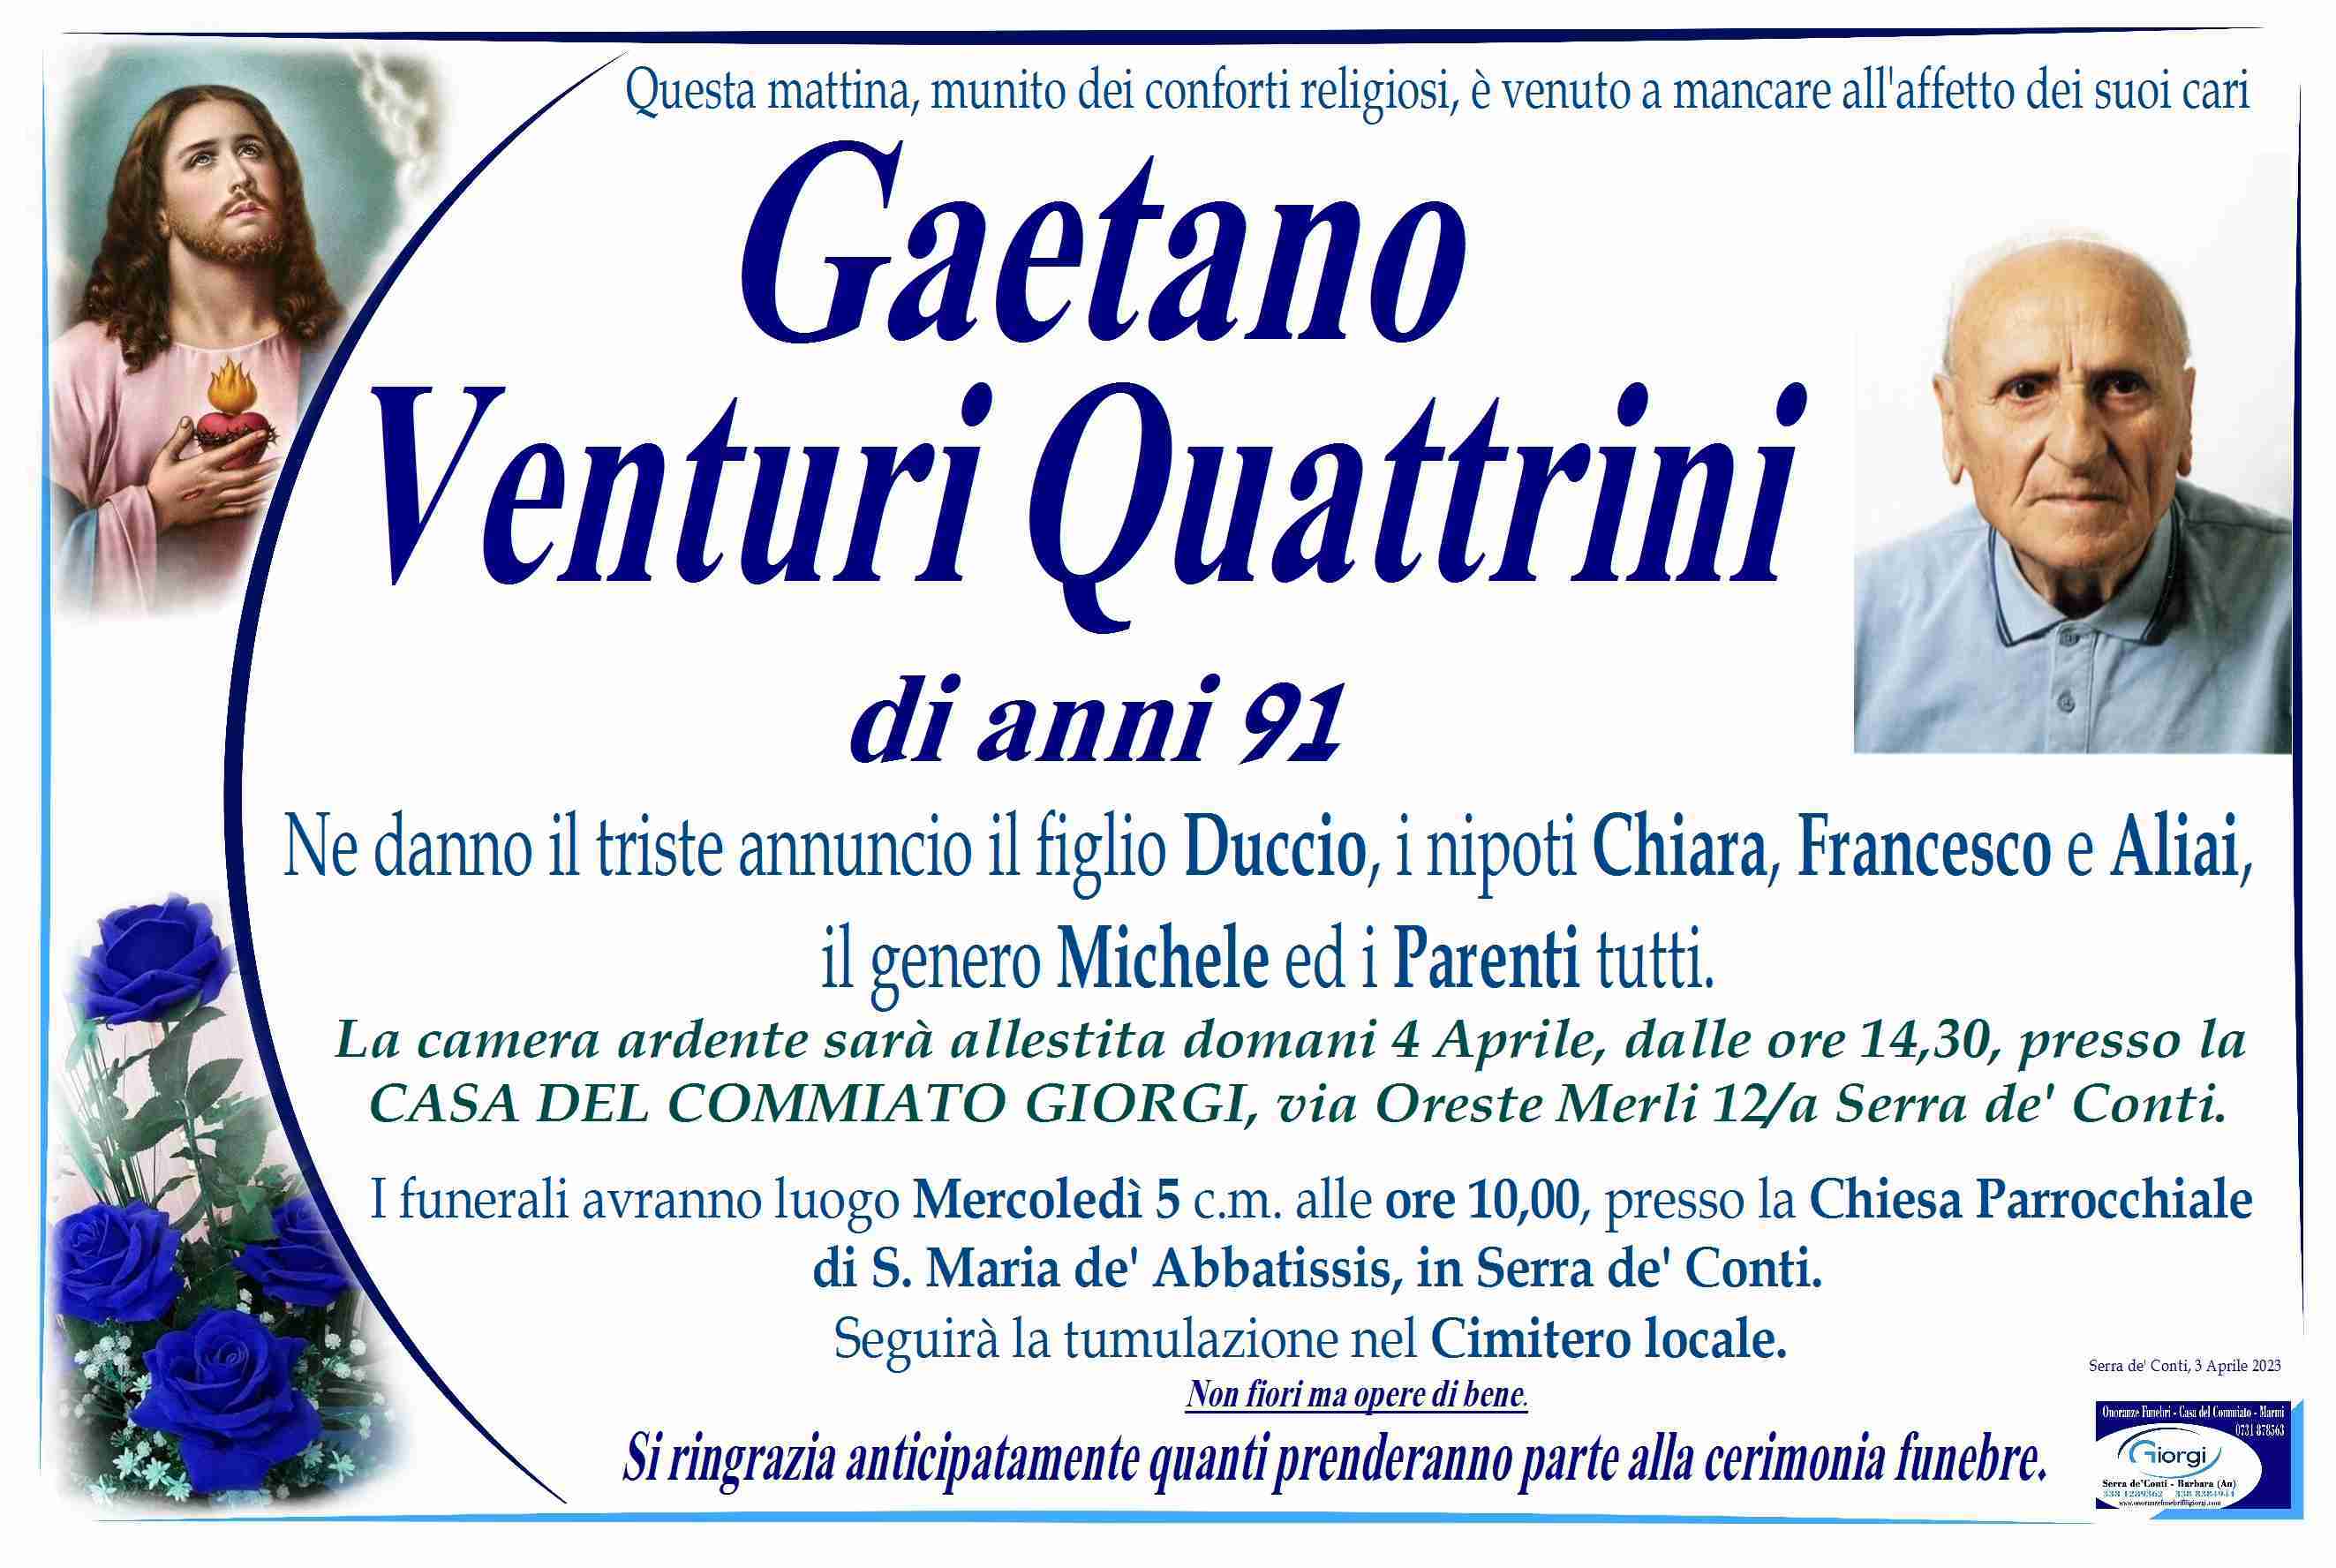 Gaetano Venturi Quattrini